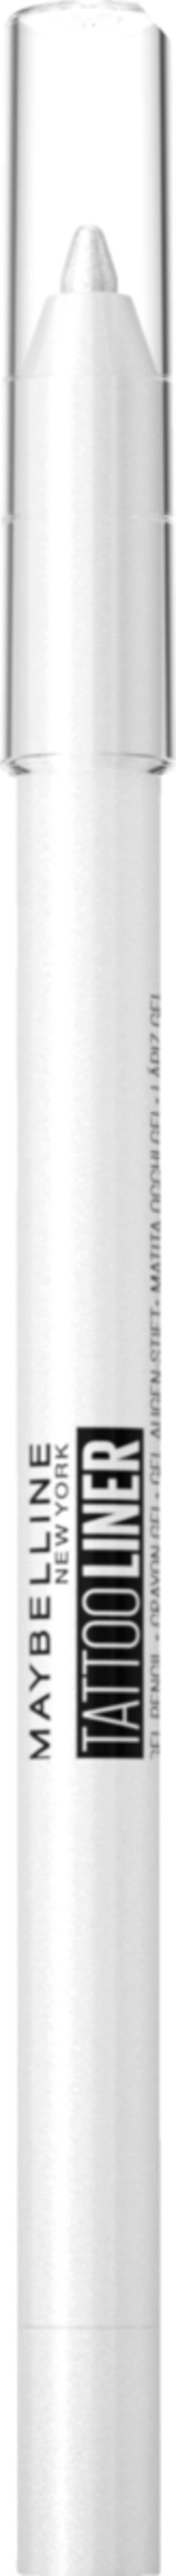 Bild 1 von Maybelline New York Tattoo Liner Gel Pencil white 970 - Polished White